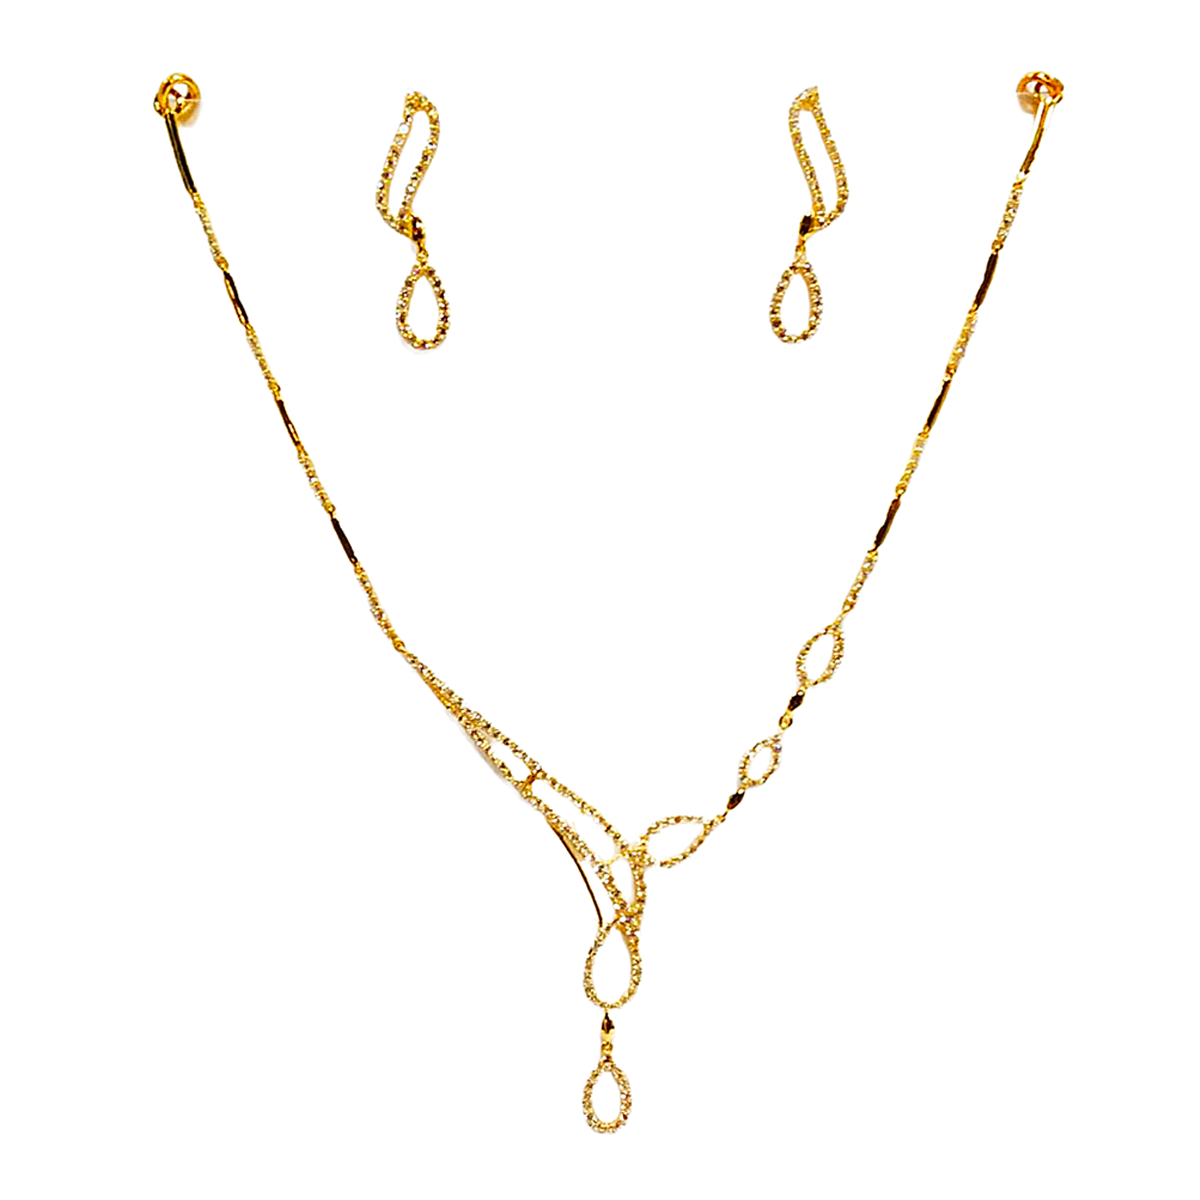 Pari gold necklace set